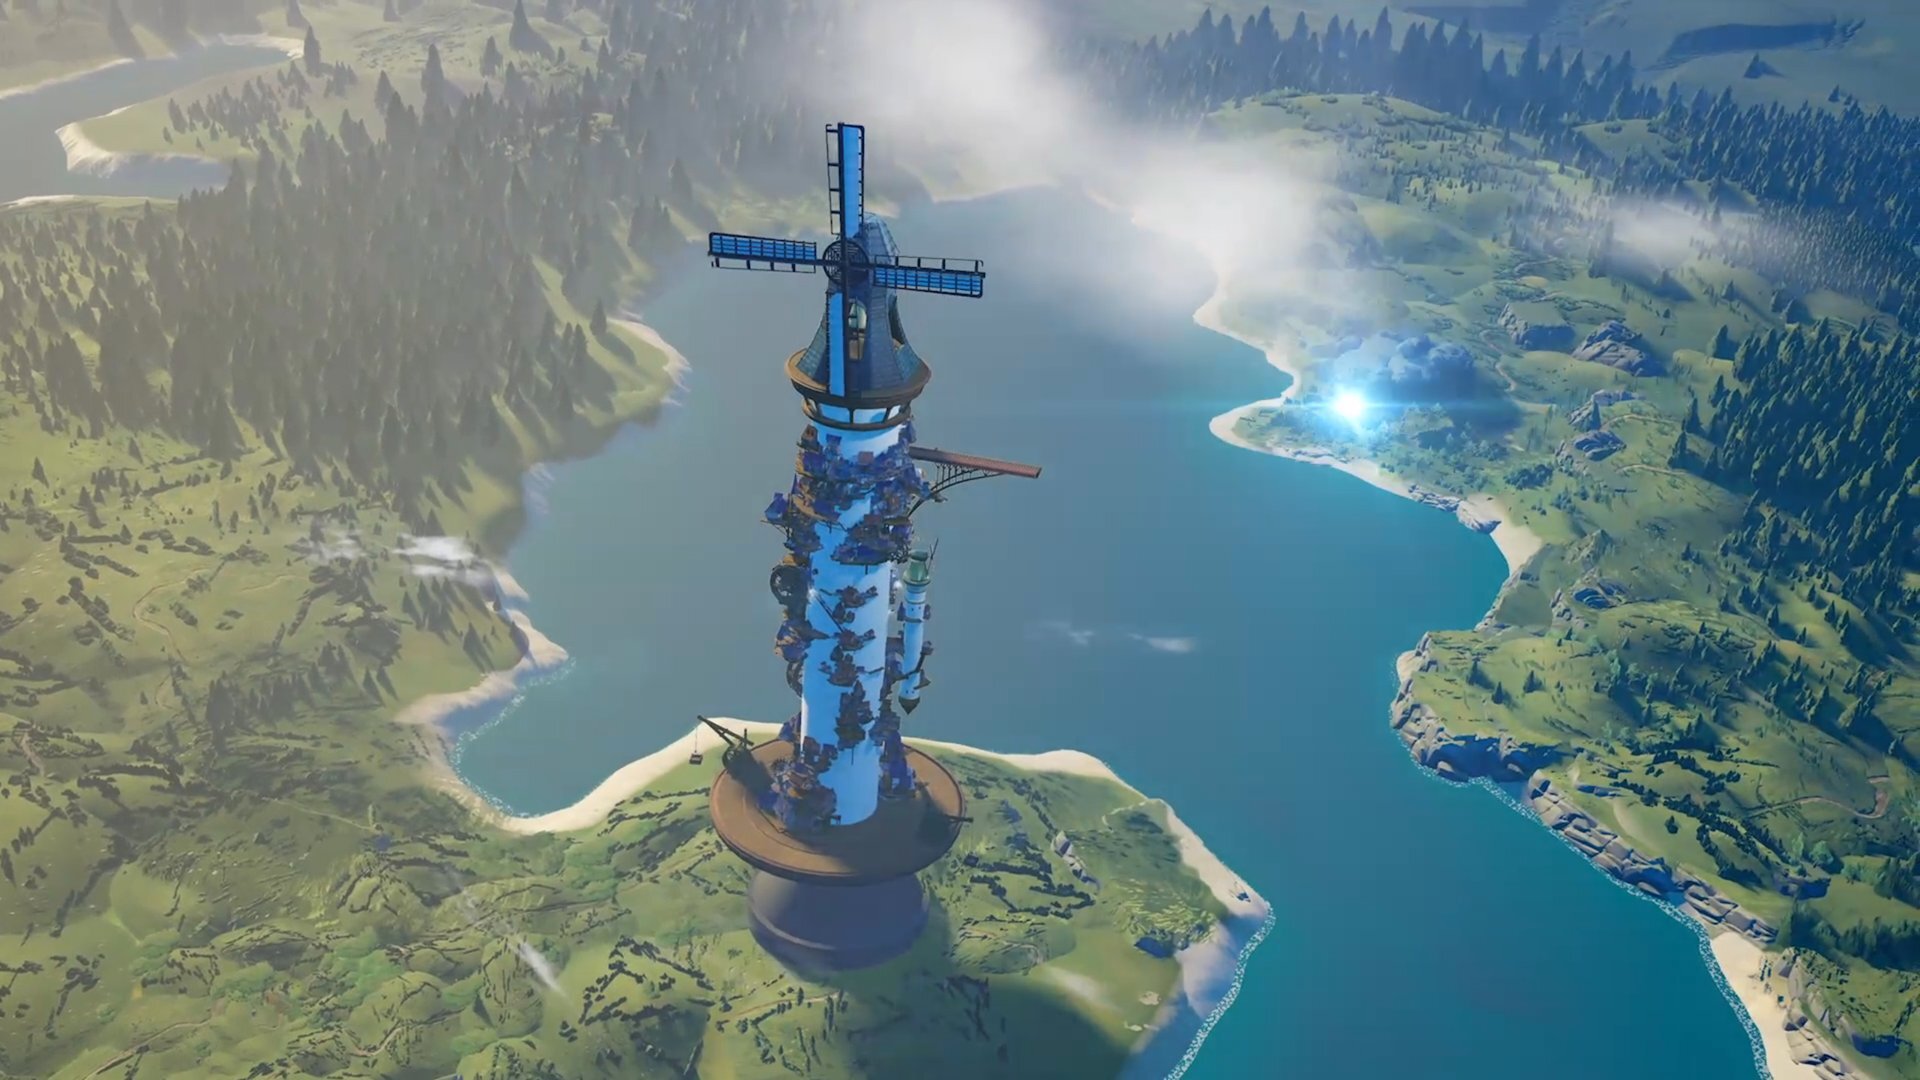 Xbox Game Studios ujawniło nową grę od Stoic Studio - Towerborne, kooperacyjną grę RPG z przewijaniem bocznym.